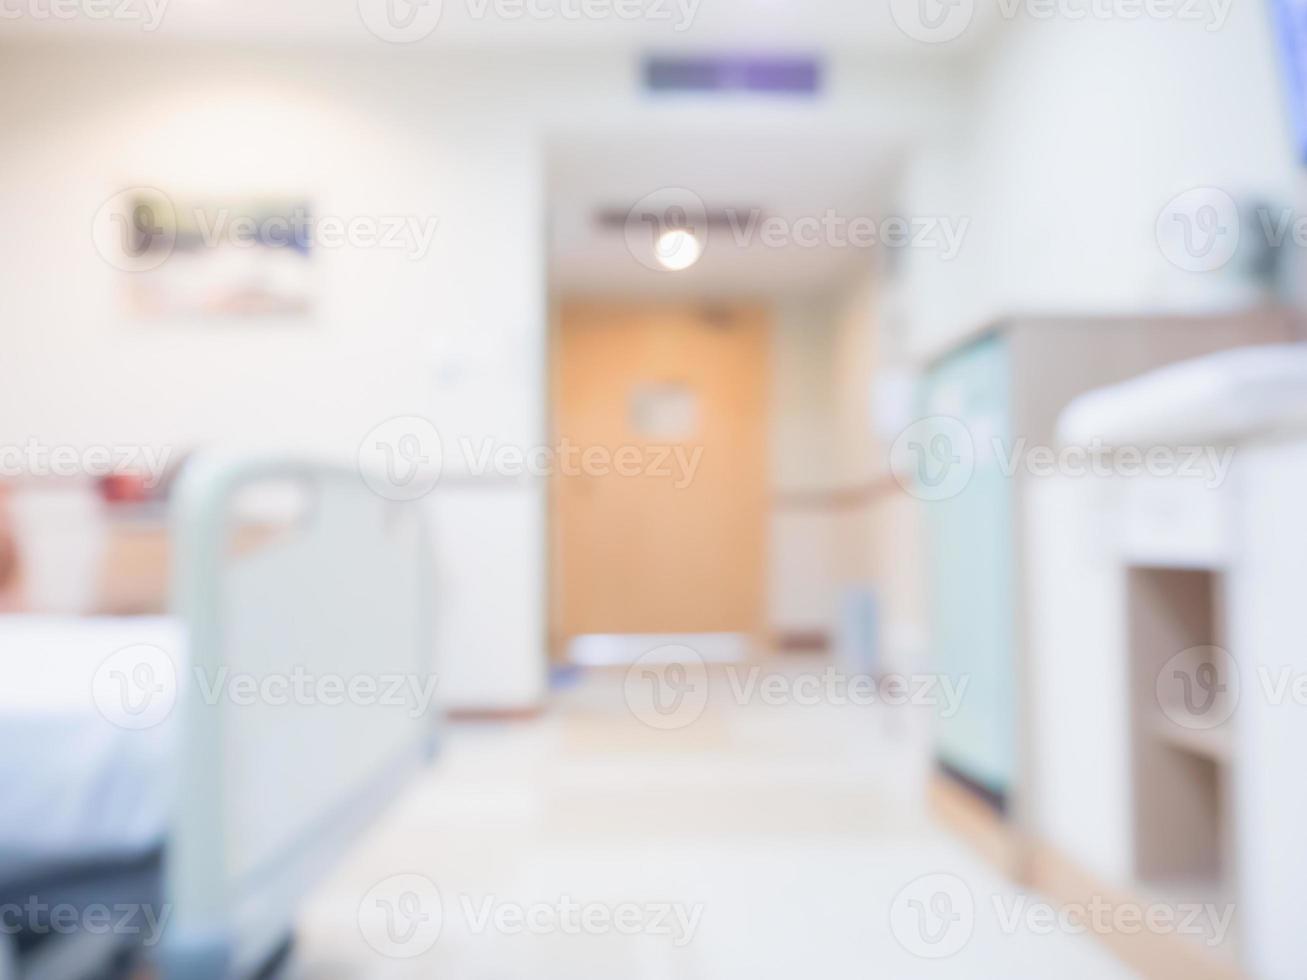 abstrakte Unschärfe Krankenhausraum Interieur für Hintergrund foto